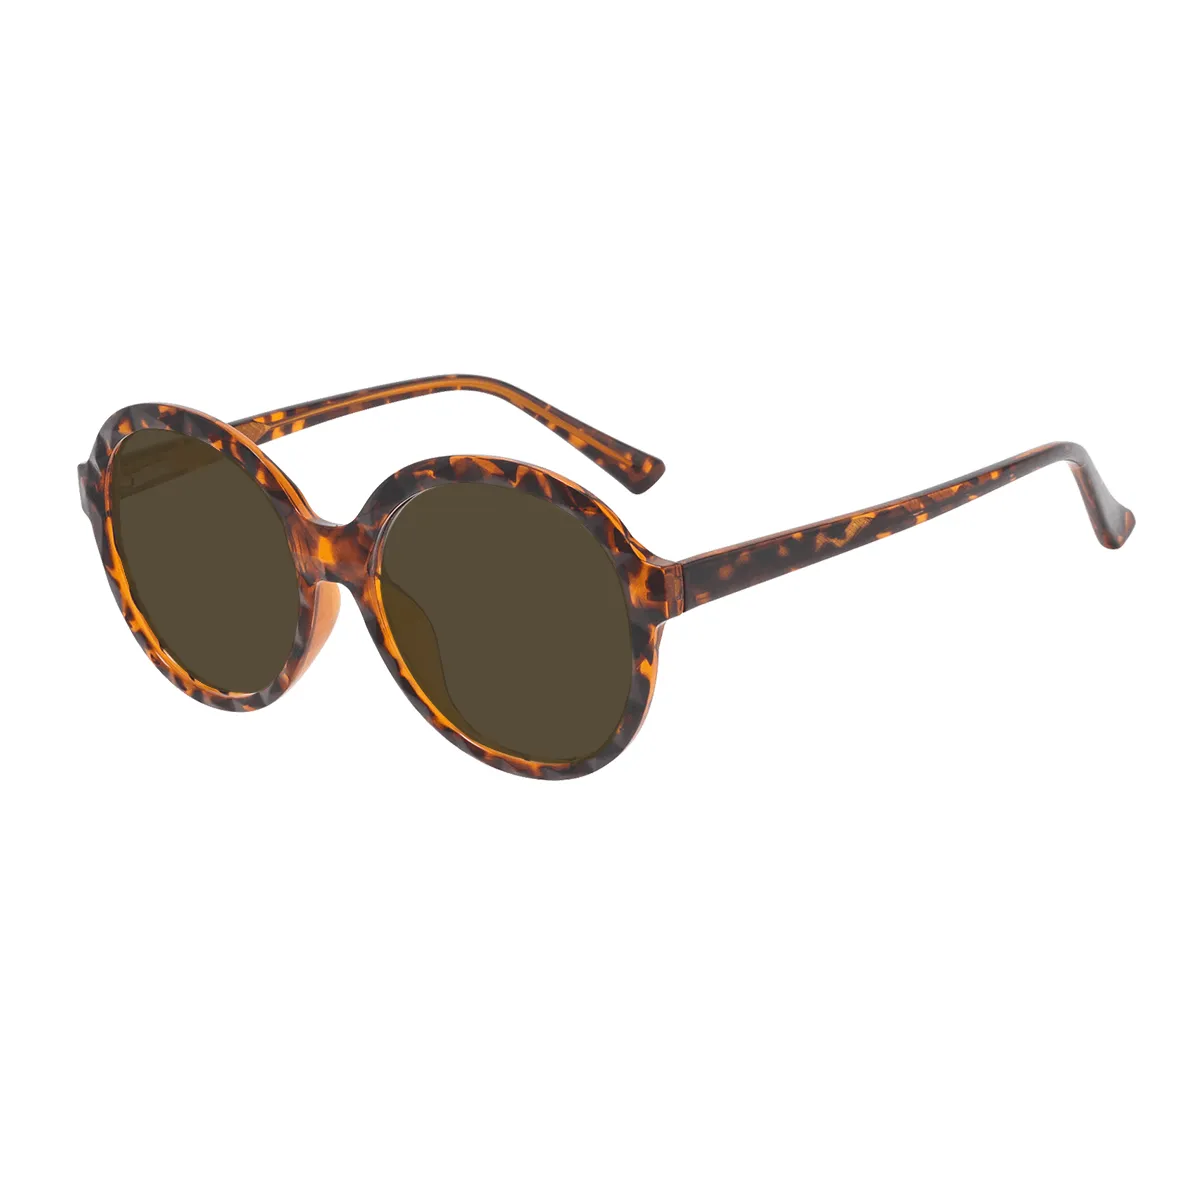 Minna - Round Tortoiseshell Sunglasses for Women